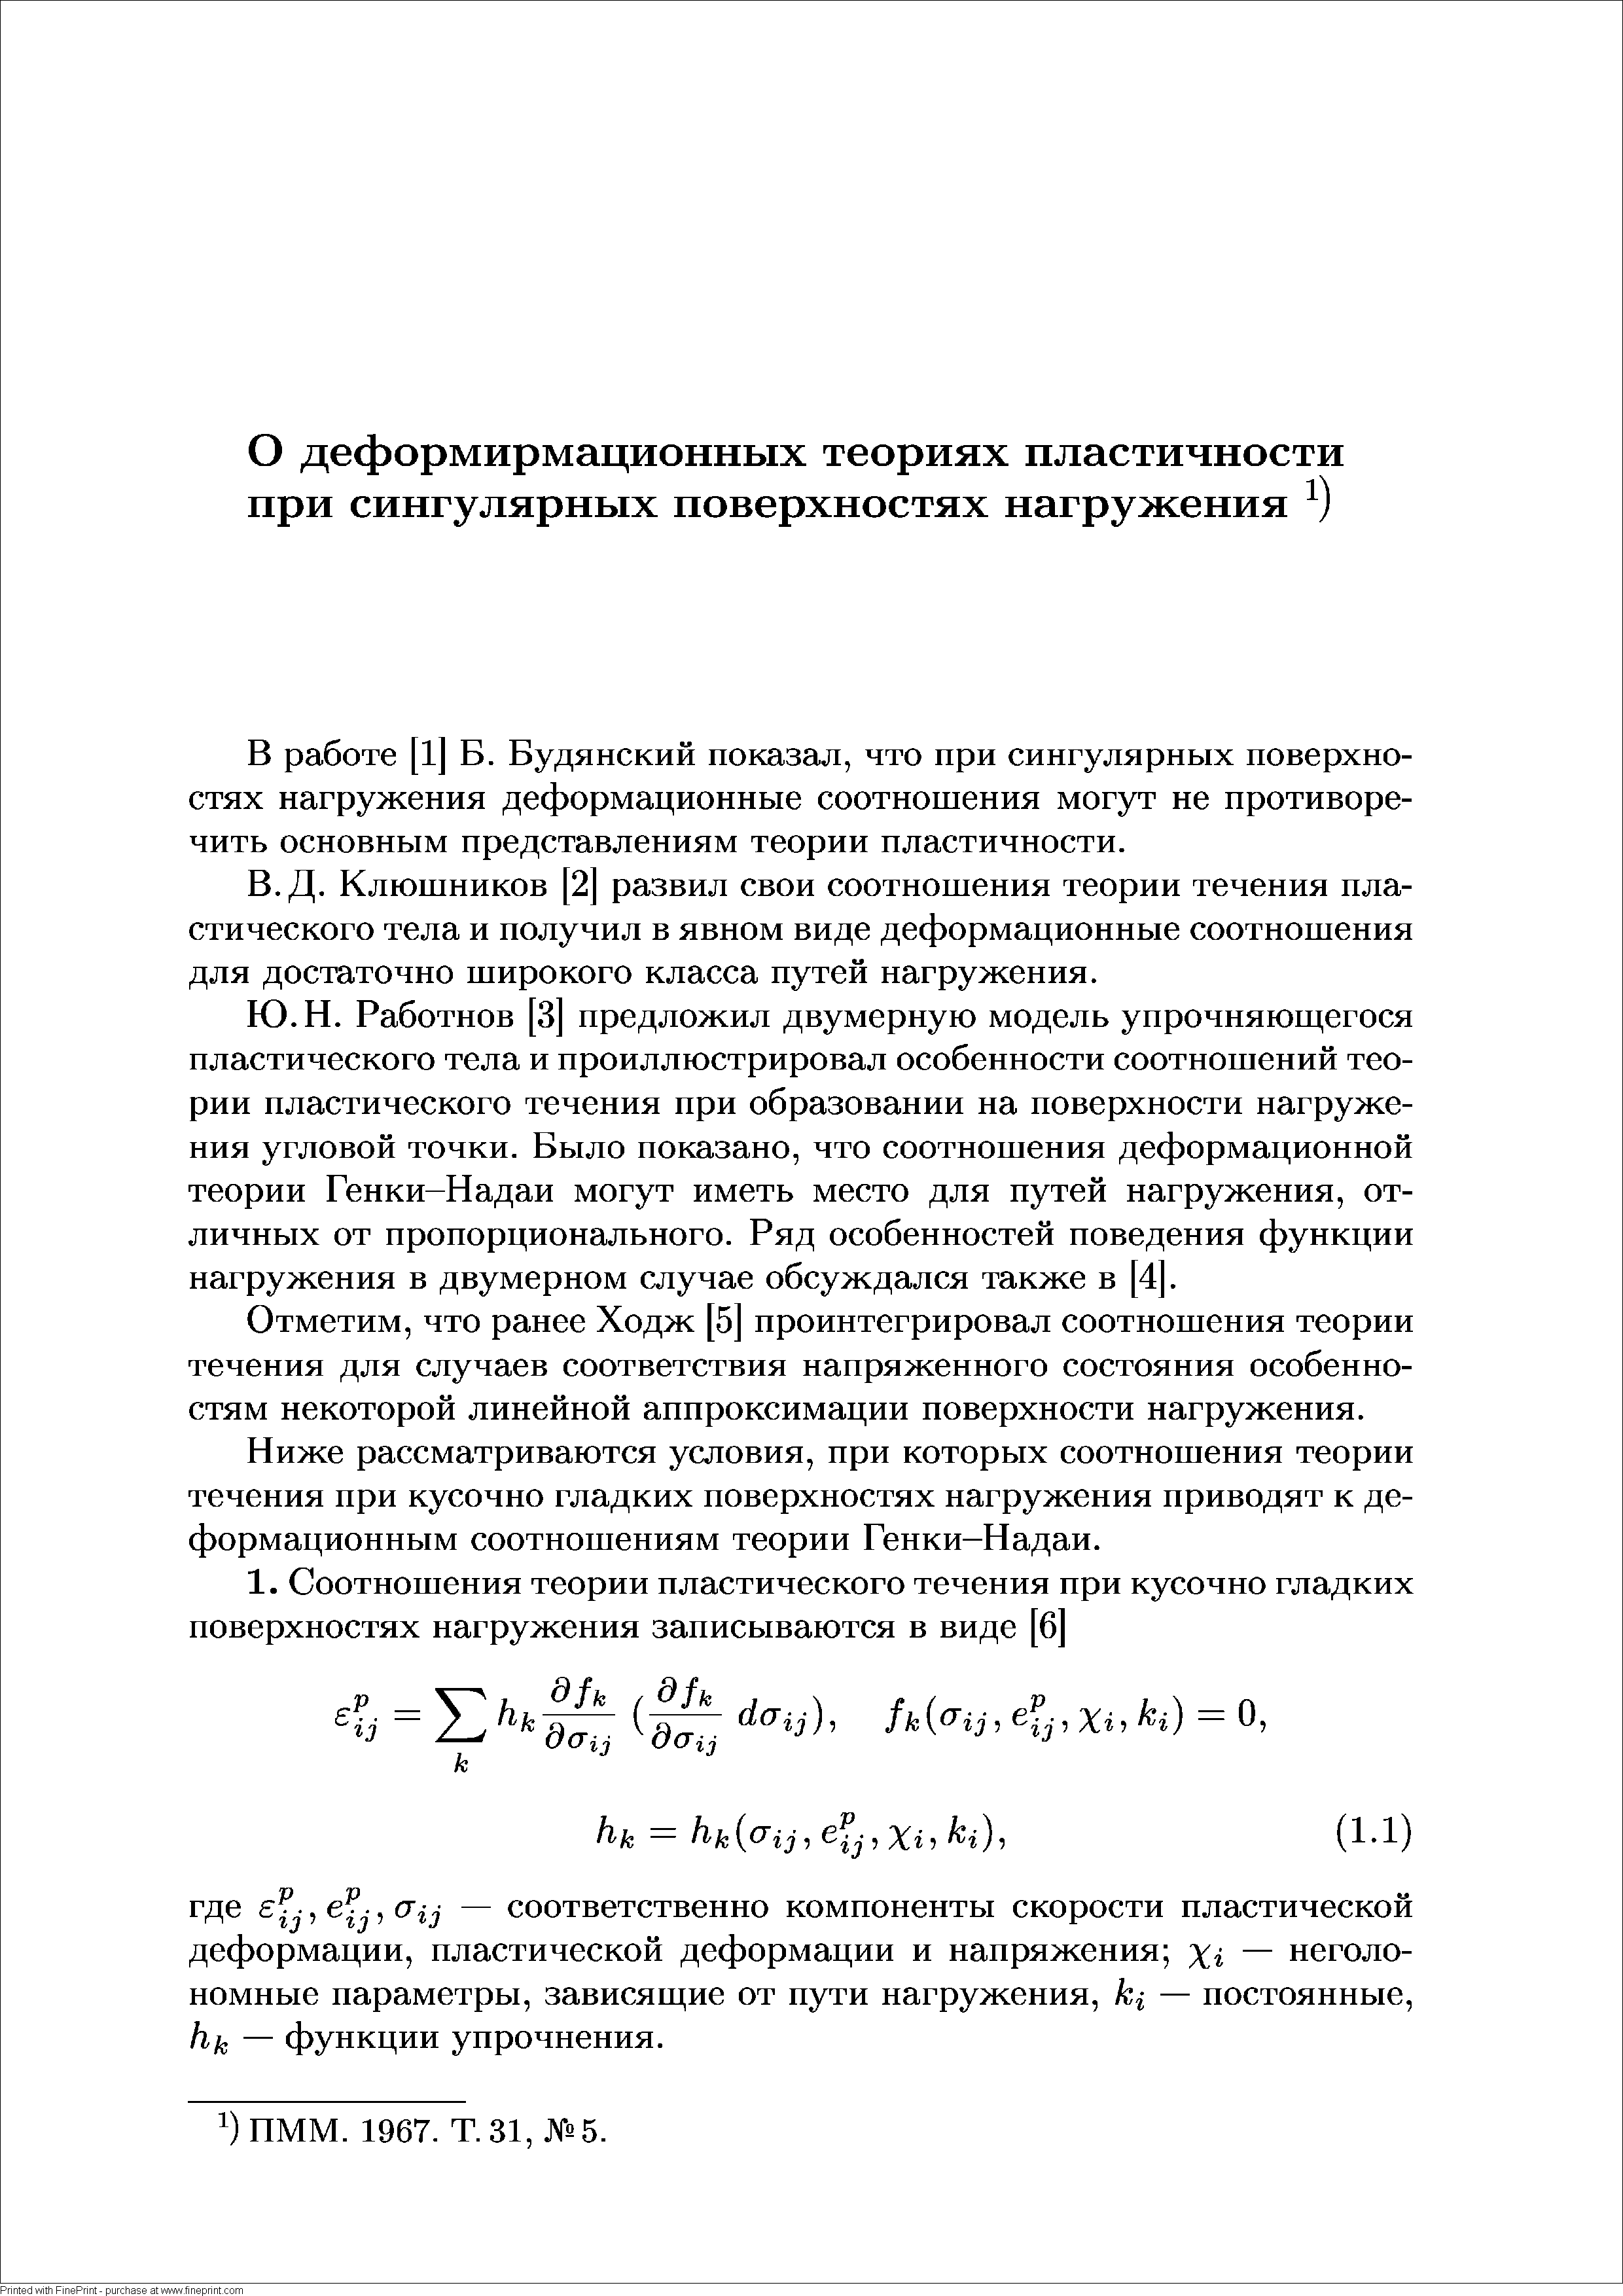 В работе [1] Б. Будянский показал, что при сингулярных поверхностях нагружения деформационные соотношения могут не противоречить основным представлениям теории пластичности.
